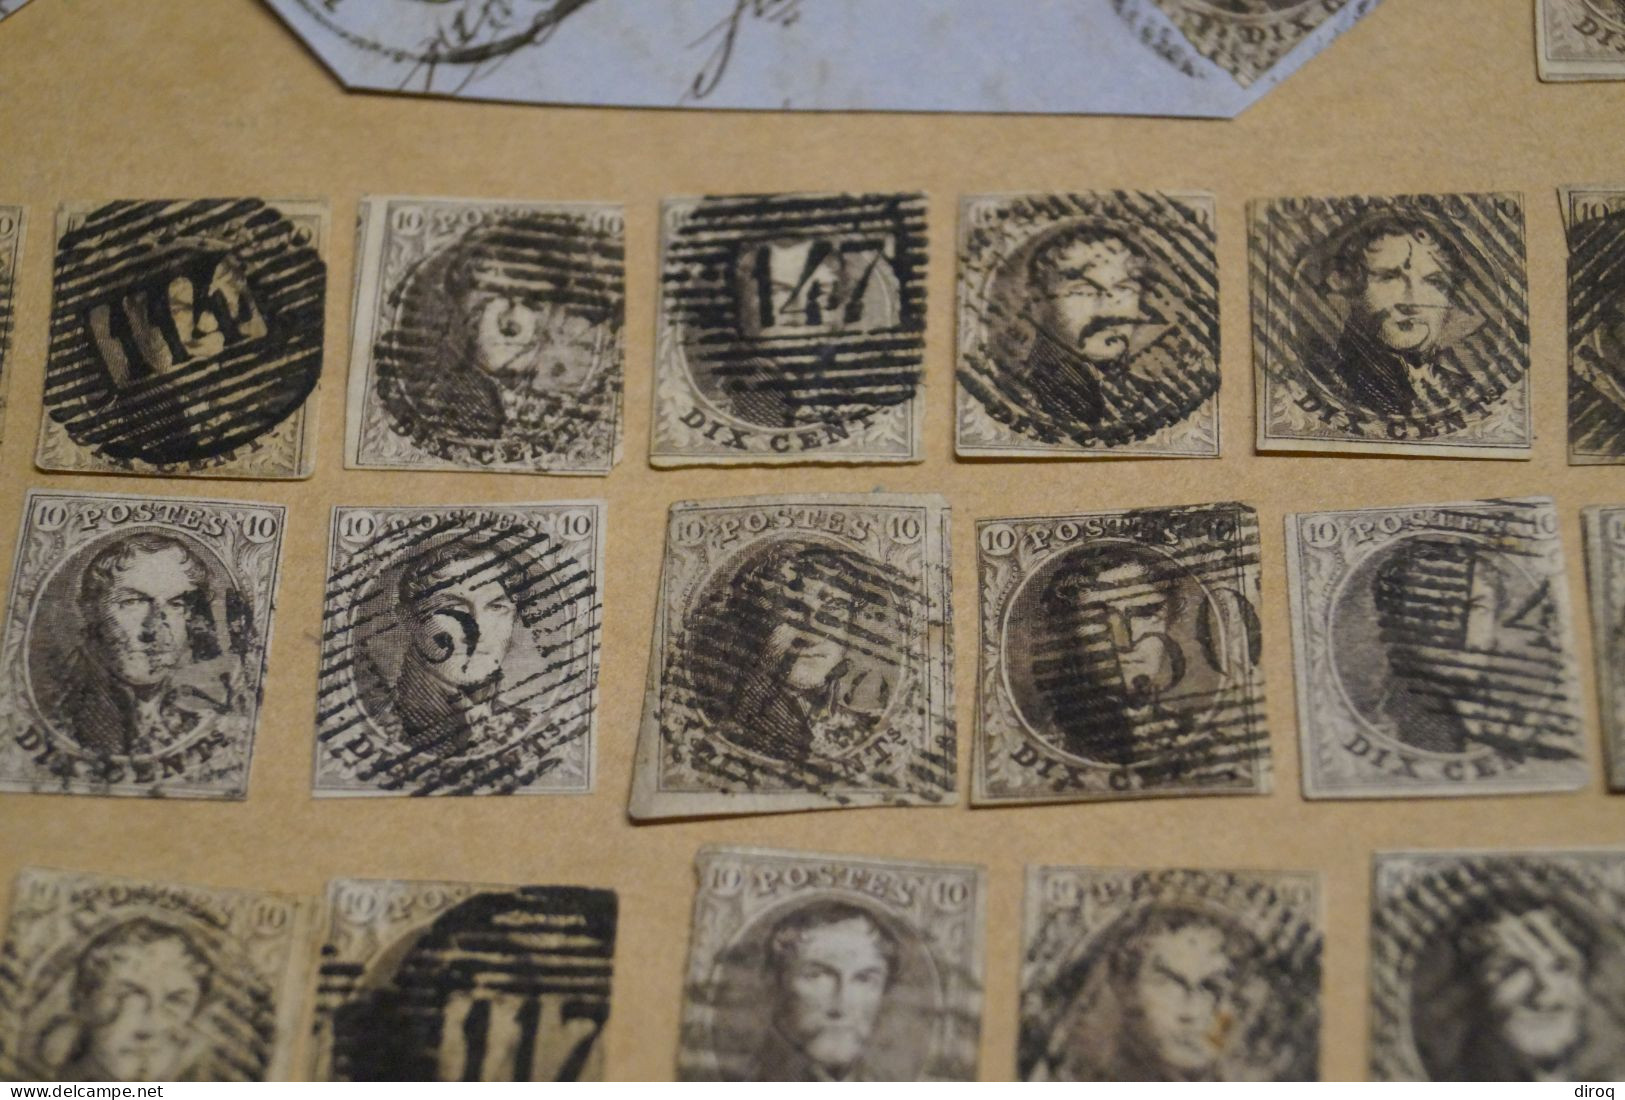 RARE lot de 47 timbres non dentelés,1860-1861,oblitérations de bureau de poste à identifier,timbres